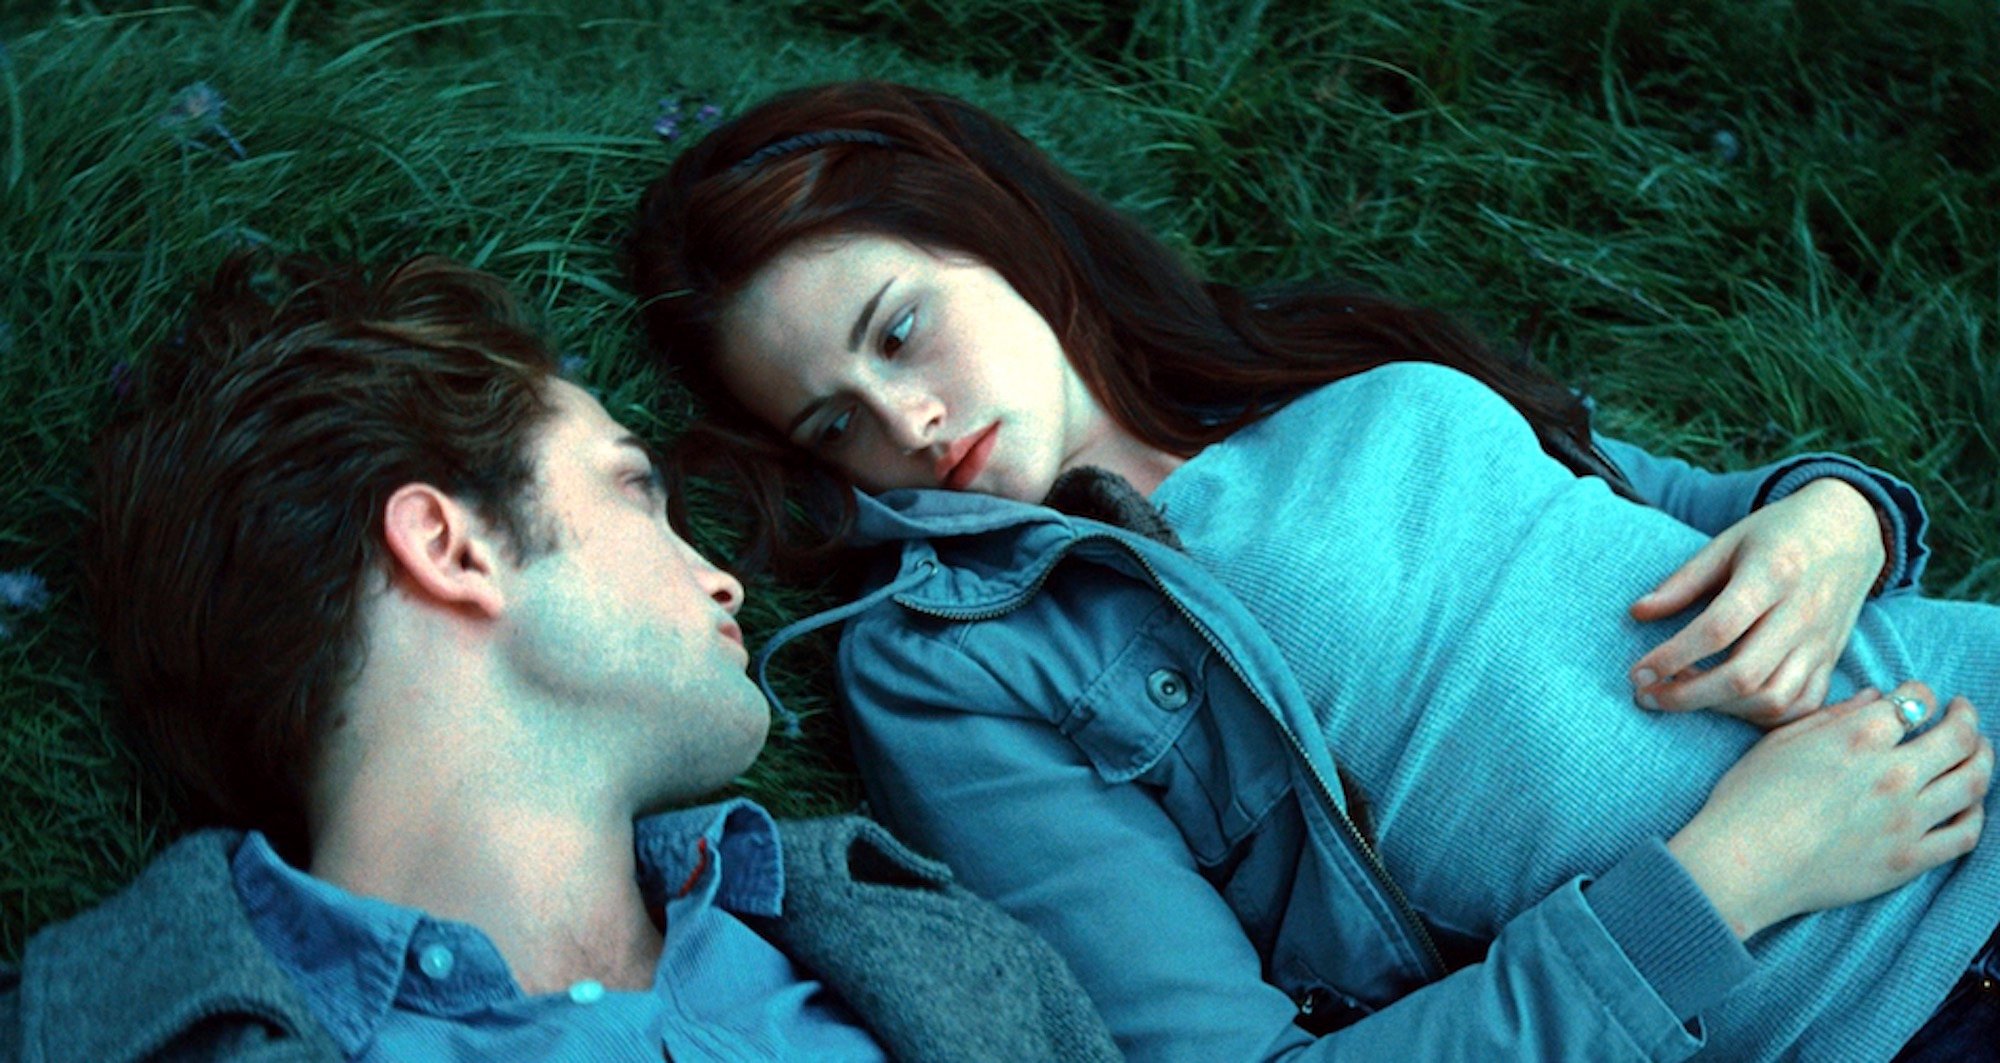 Edward Cullen (Robert Pattinson) and Bella Swan (Kristen Stewart) in 'Twilight'